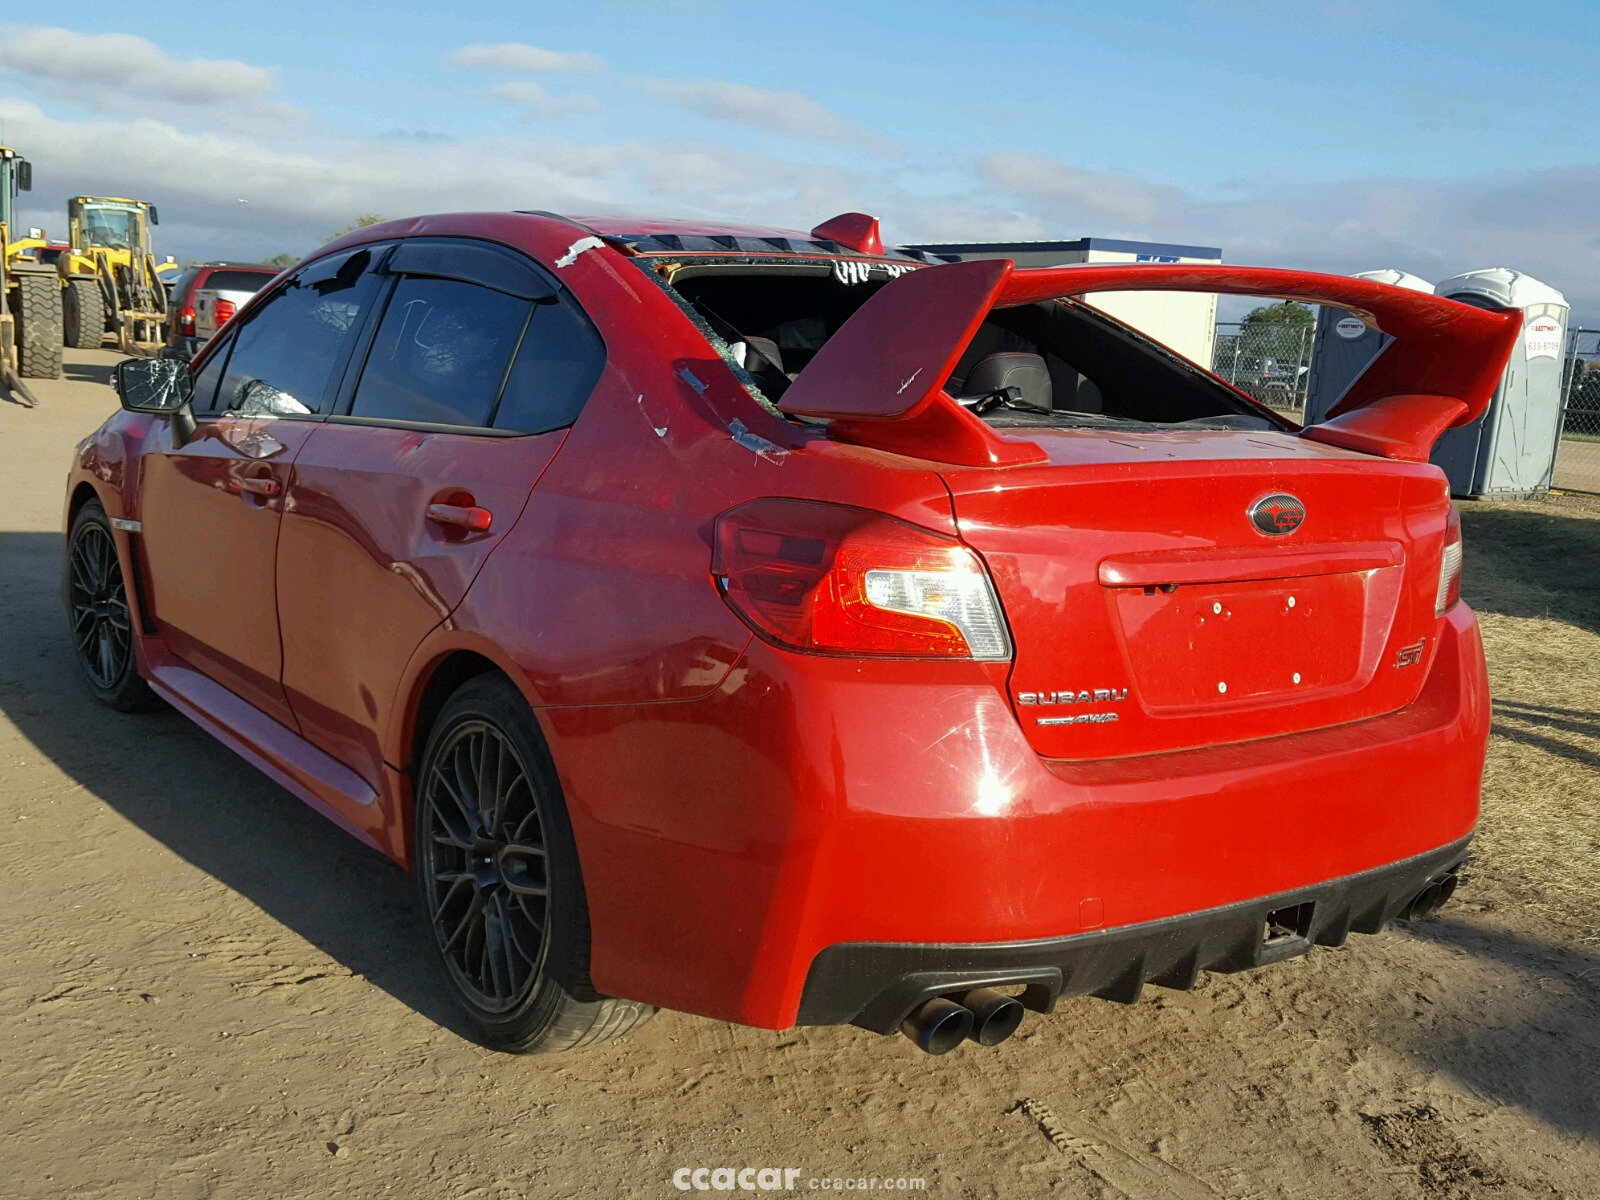 2016 Subaru WRX STI Salvage & Damaged Cars for Sale